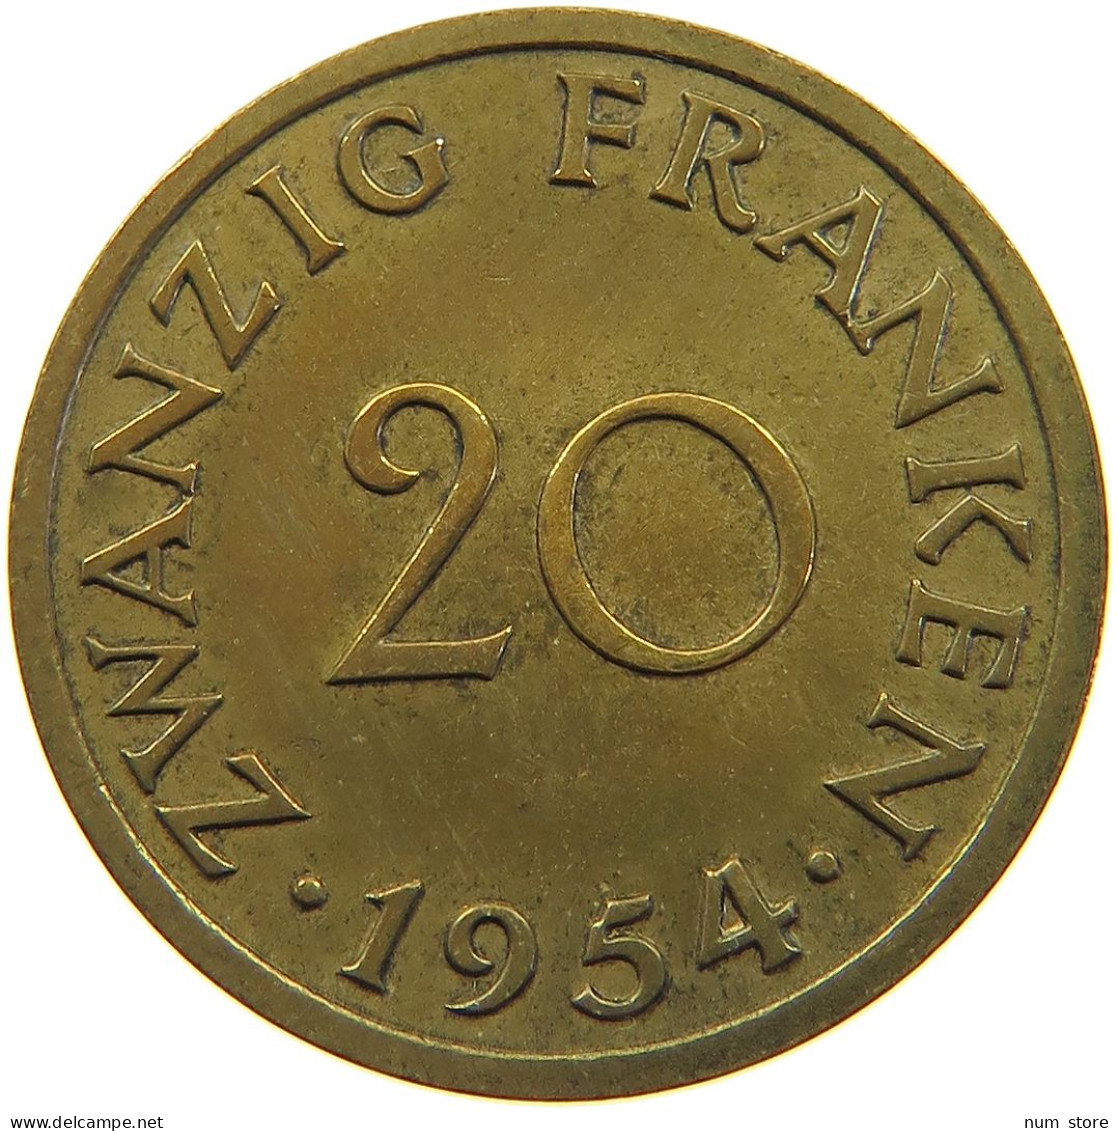 SAARLAND 20 FRANKEN 1954  #a056 0581 - 20 Franchi